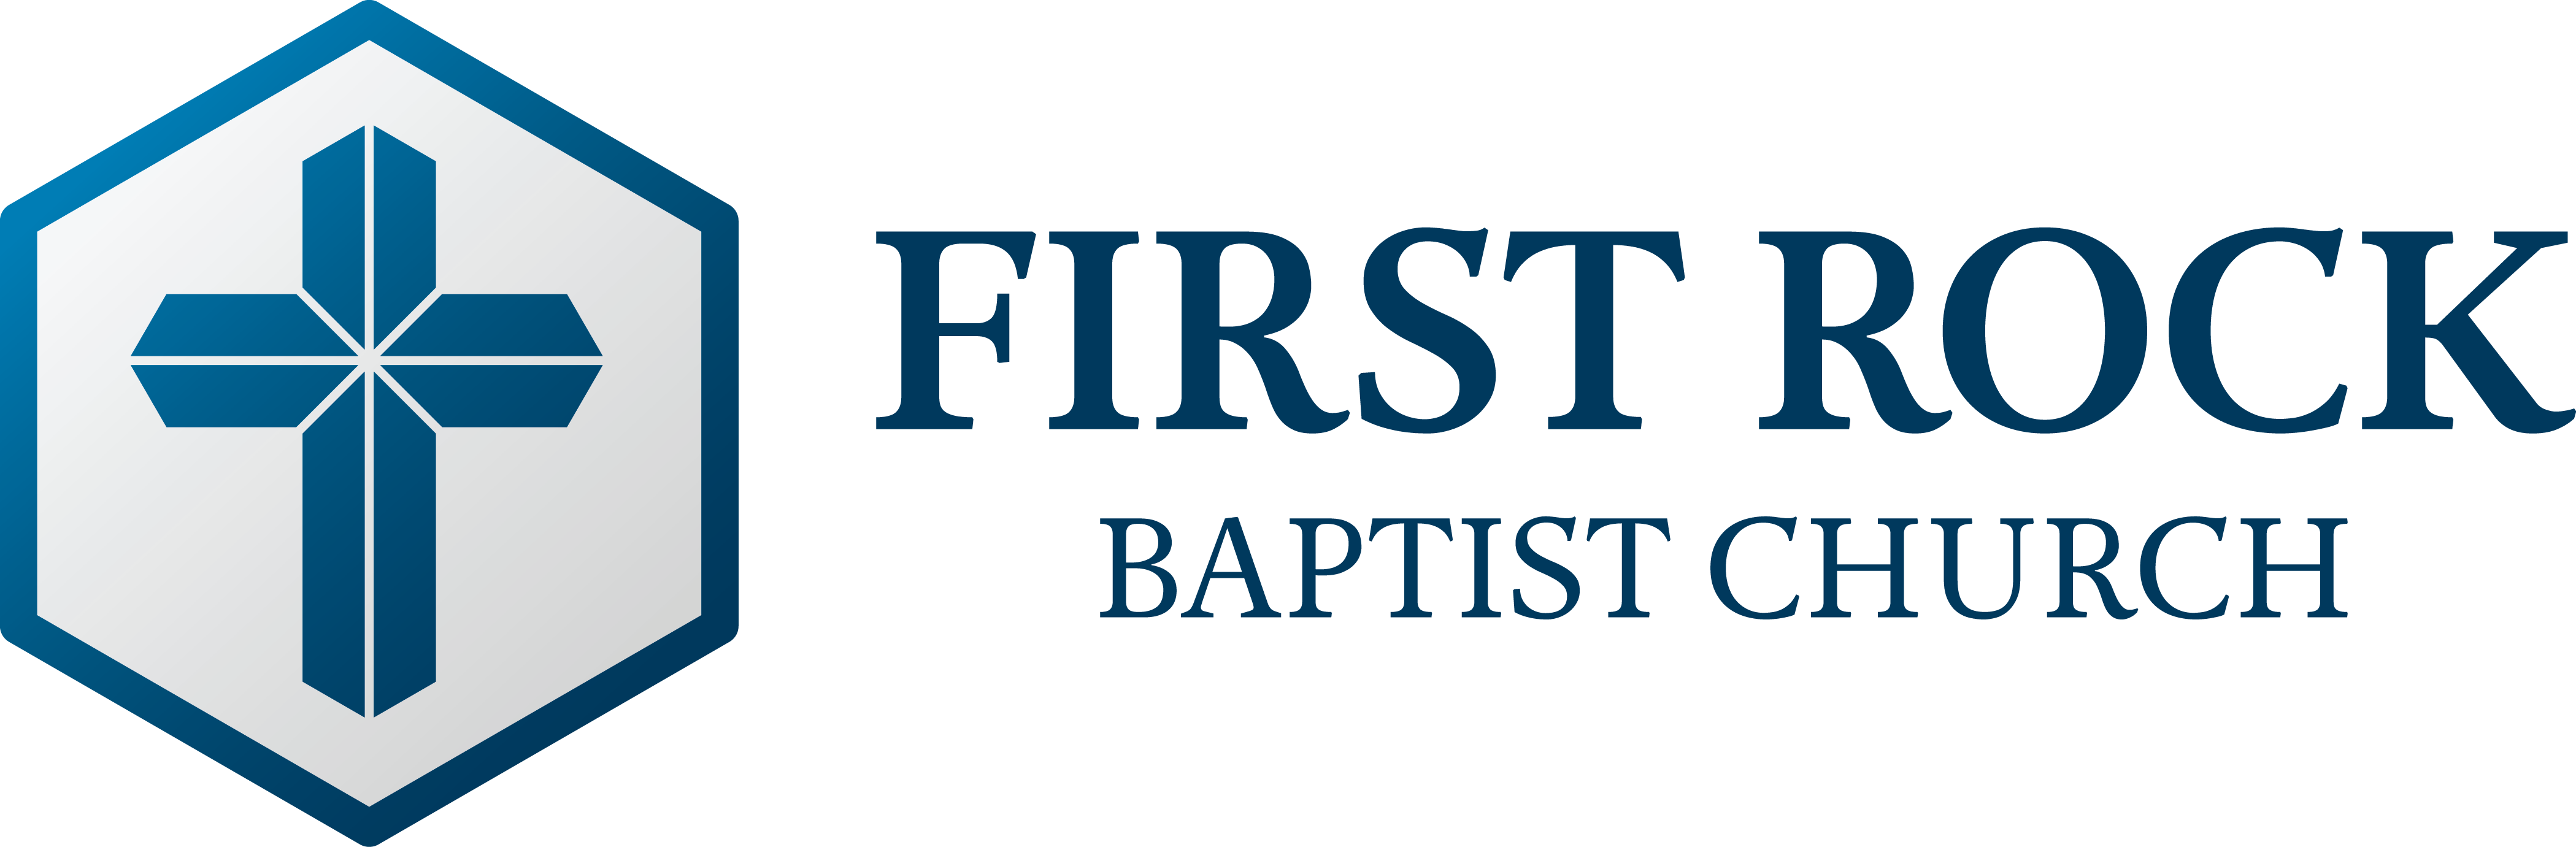 First Rock Baptist Church